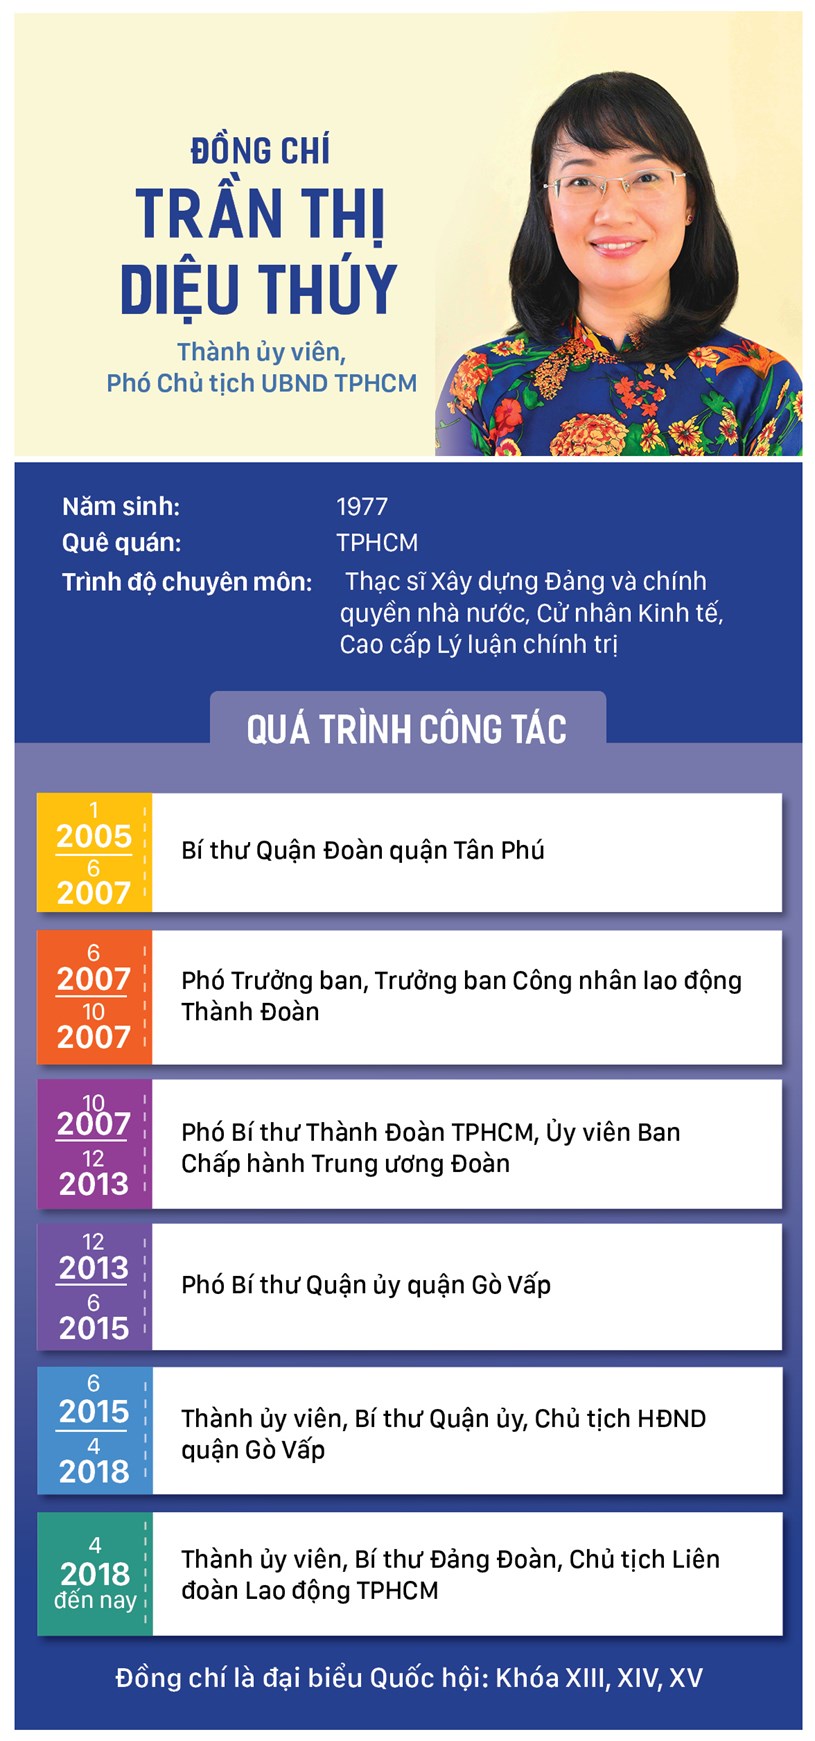 Đồng ch&#237; Trần Thị Diệu Th&#250;y được bầu l&#224;m Ph&#243; Chủ tịch UBND TPHCM - Ảnh 1